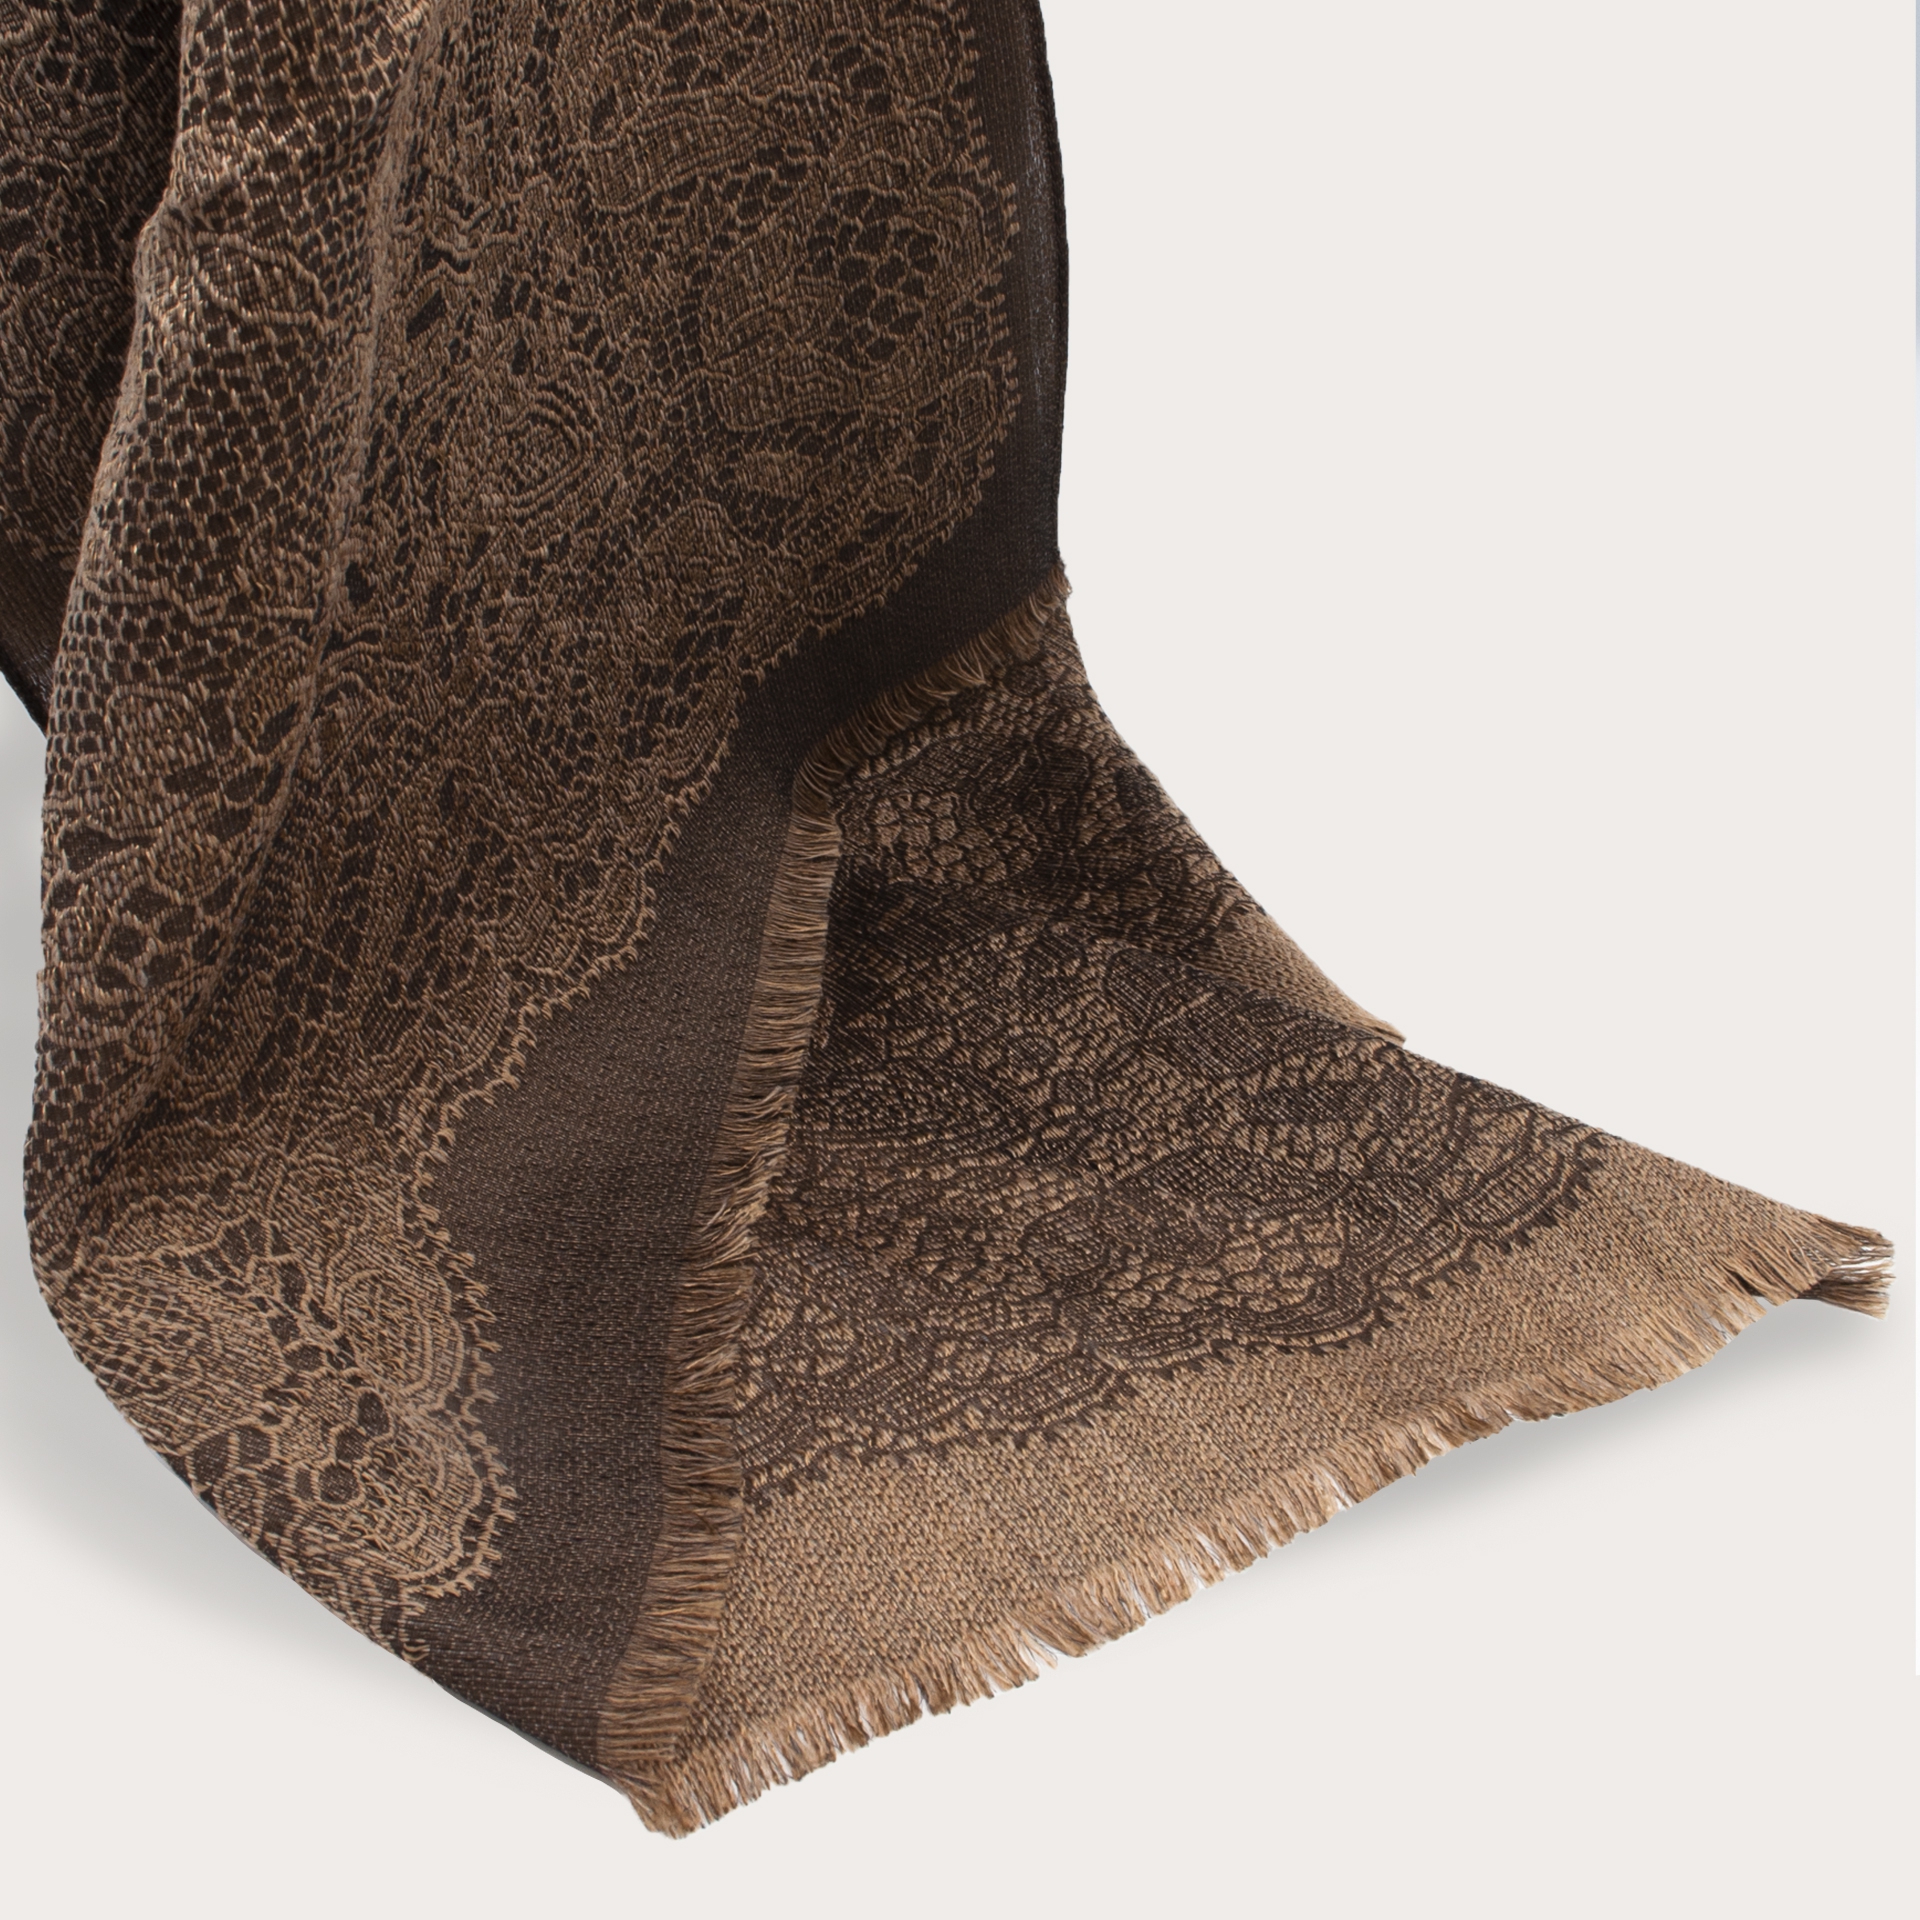 BRUCLE Bufanda de lana virgen con patrón de calados, marrón y beige brillante